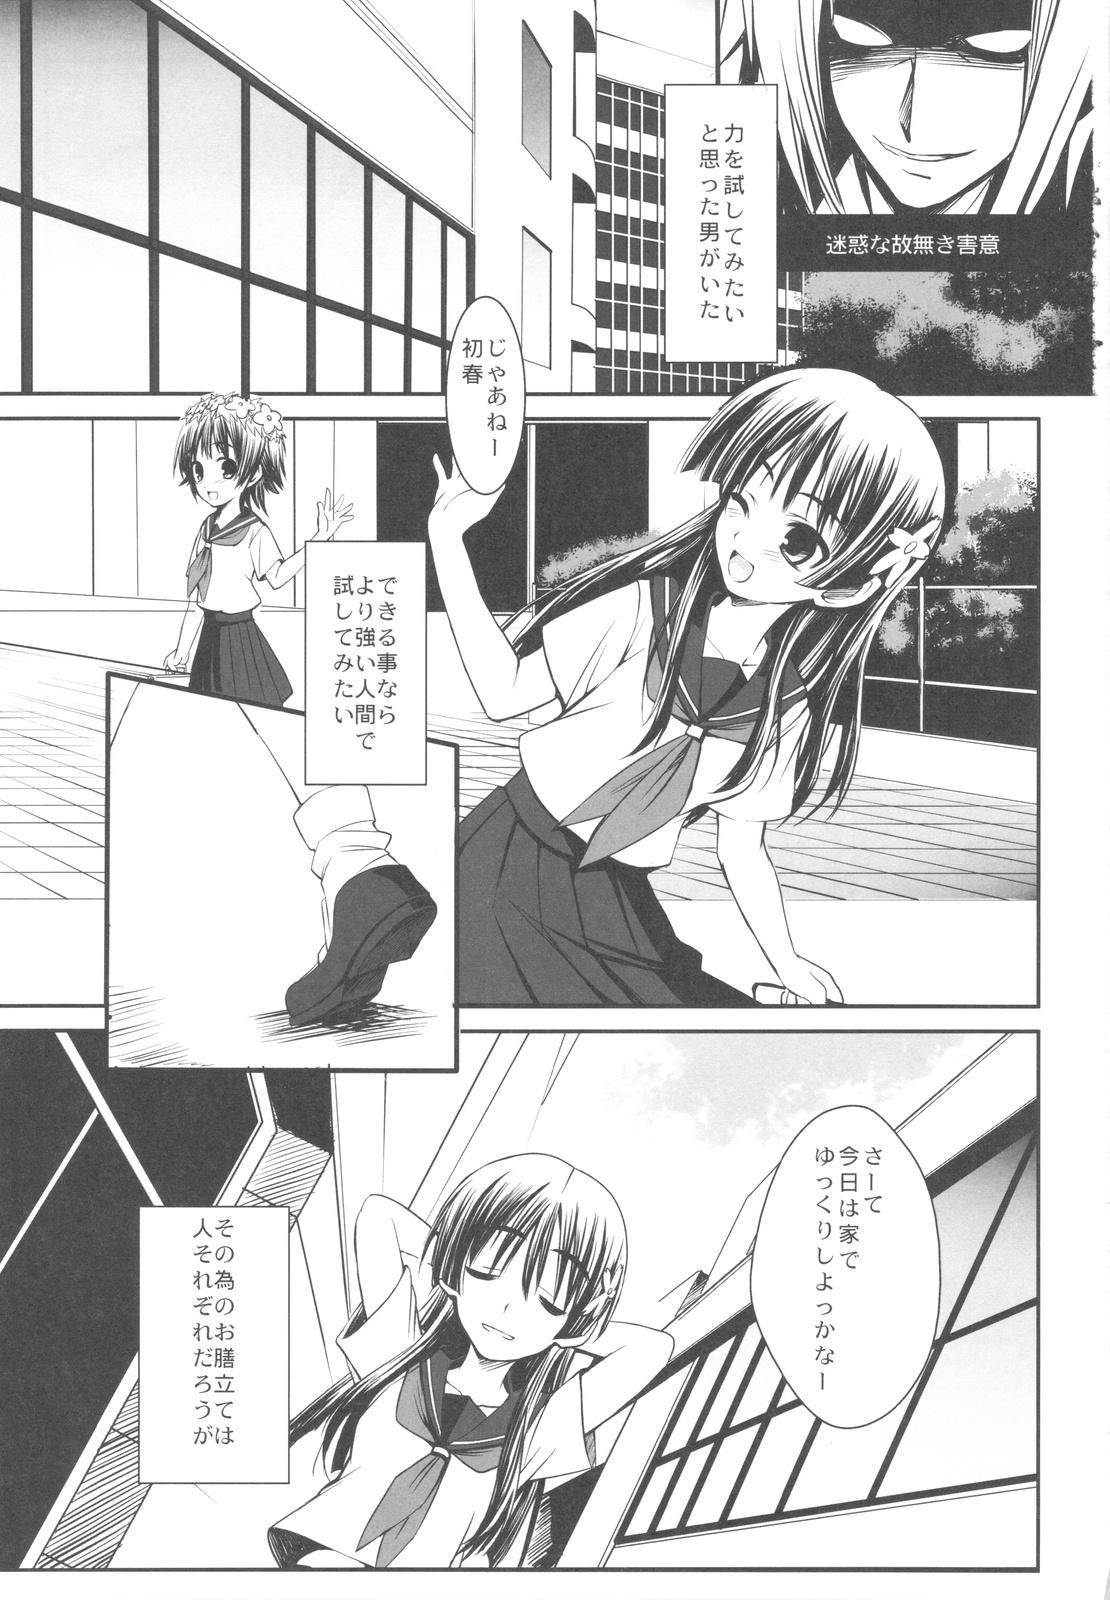 Show ERECTLIC THUNDER - Toaru kagaku no railgun Buttplug - Page 3